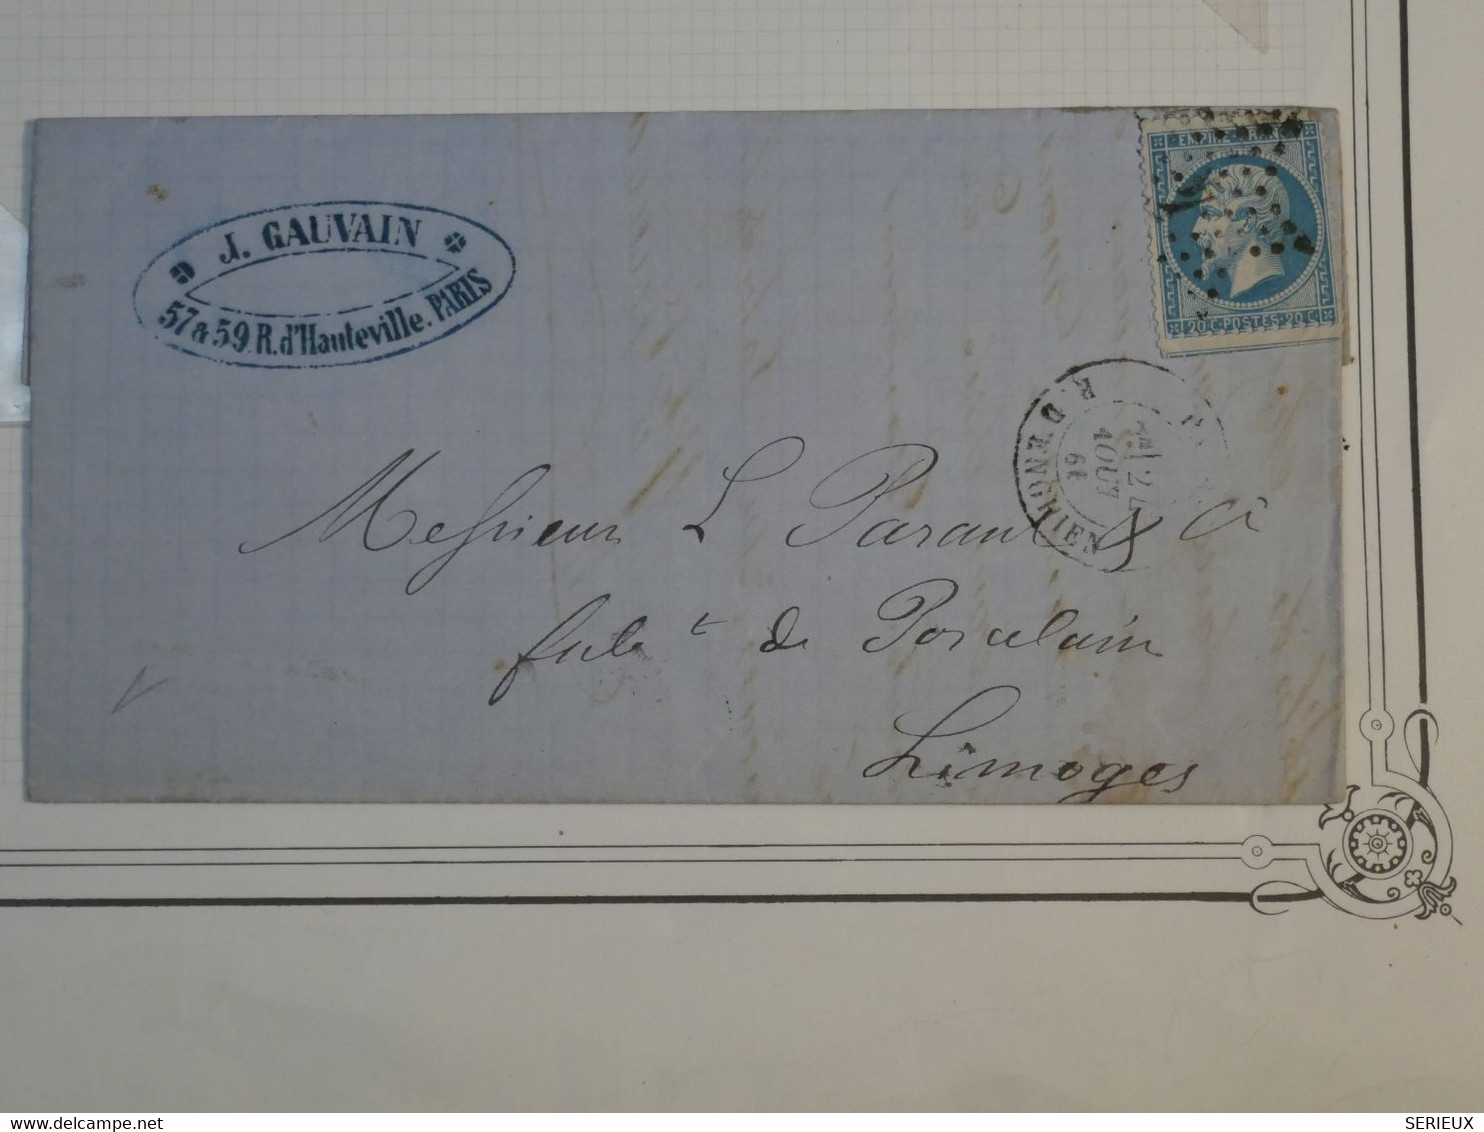 BO7 FRANCE  LETTRE  1861 ETOILE DE PARIS N° 4  A LIMOGES  +N° 22+  +AFFRANCH. INTERESSANT++ - 1862 Napoléon III.